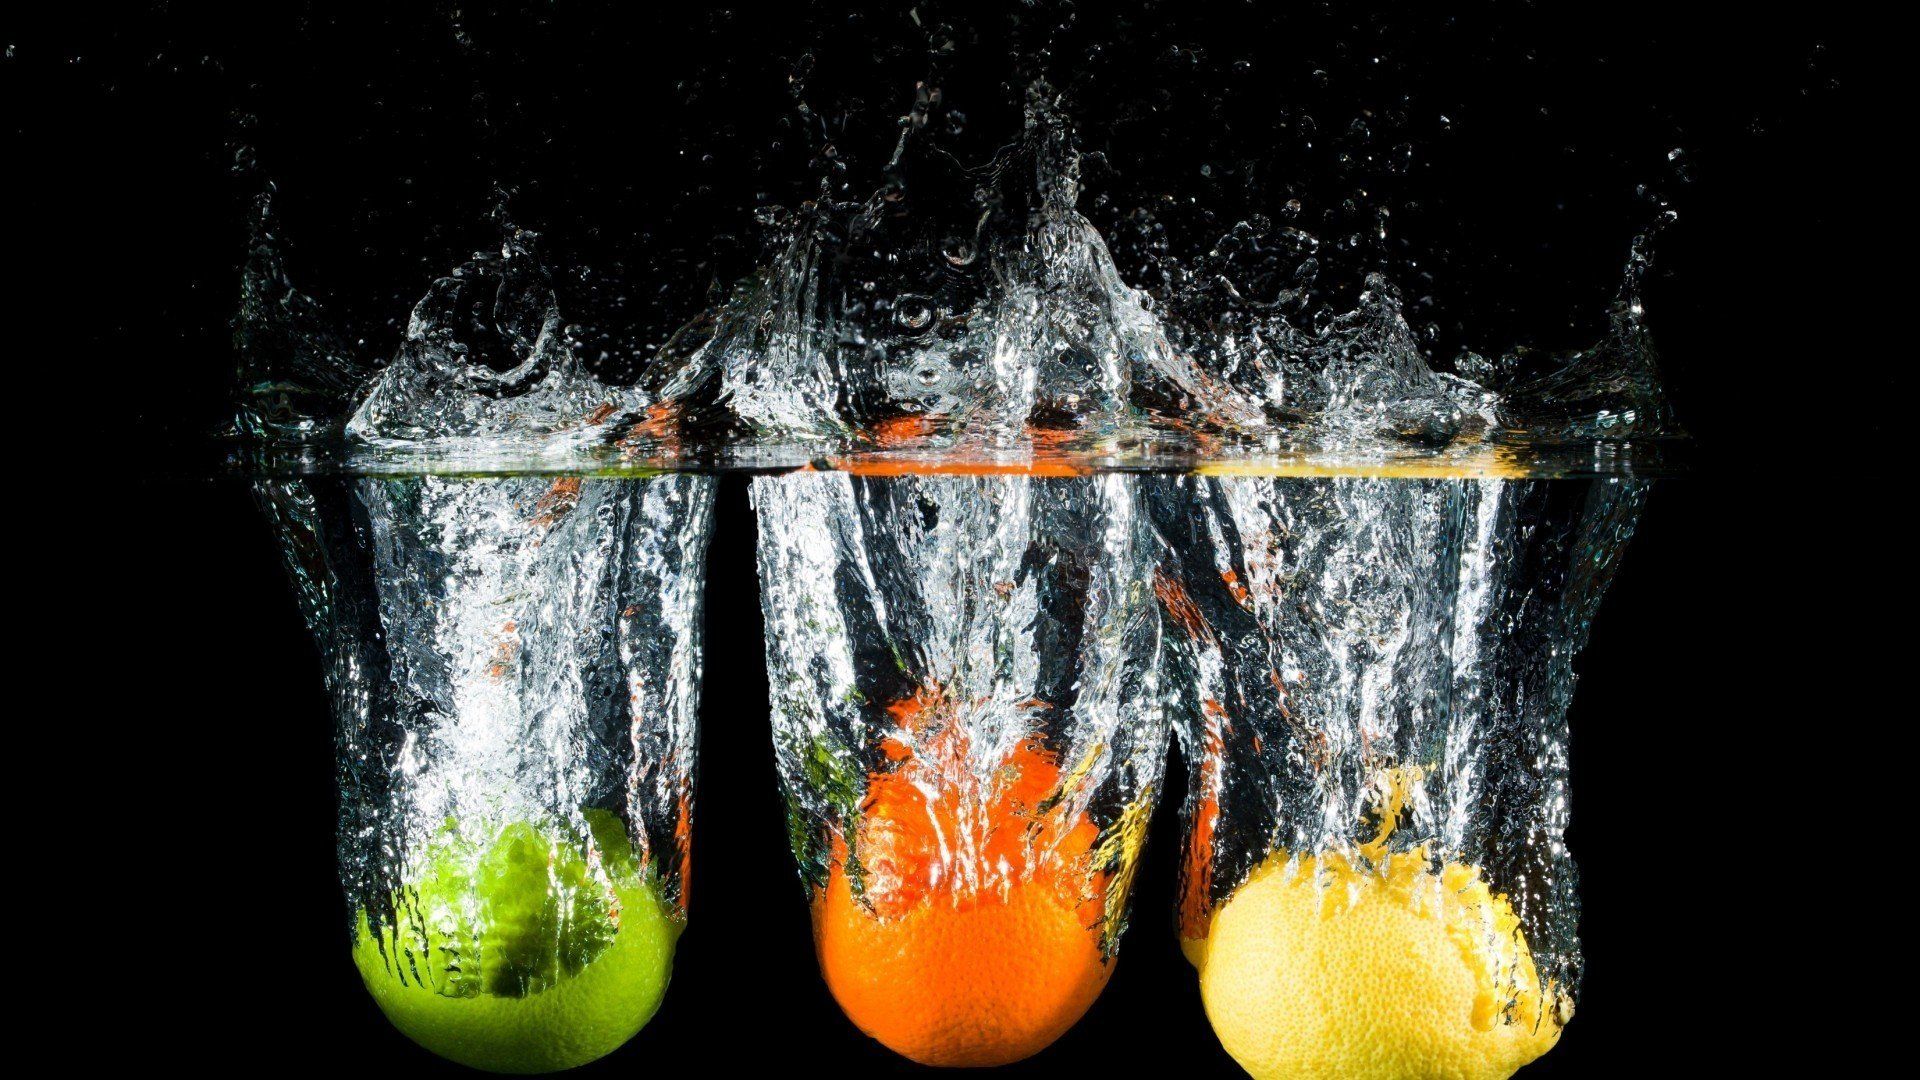 water, Food, Oranges, Lemons, Black, Background, Splashes Wallpaper HD / Desktop and Mobile Background